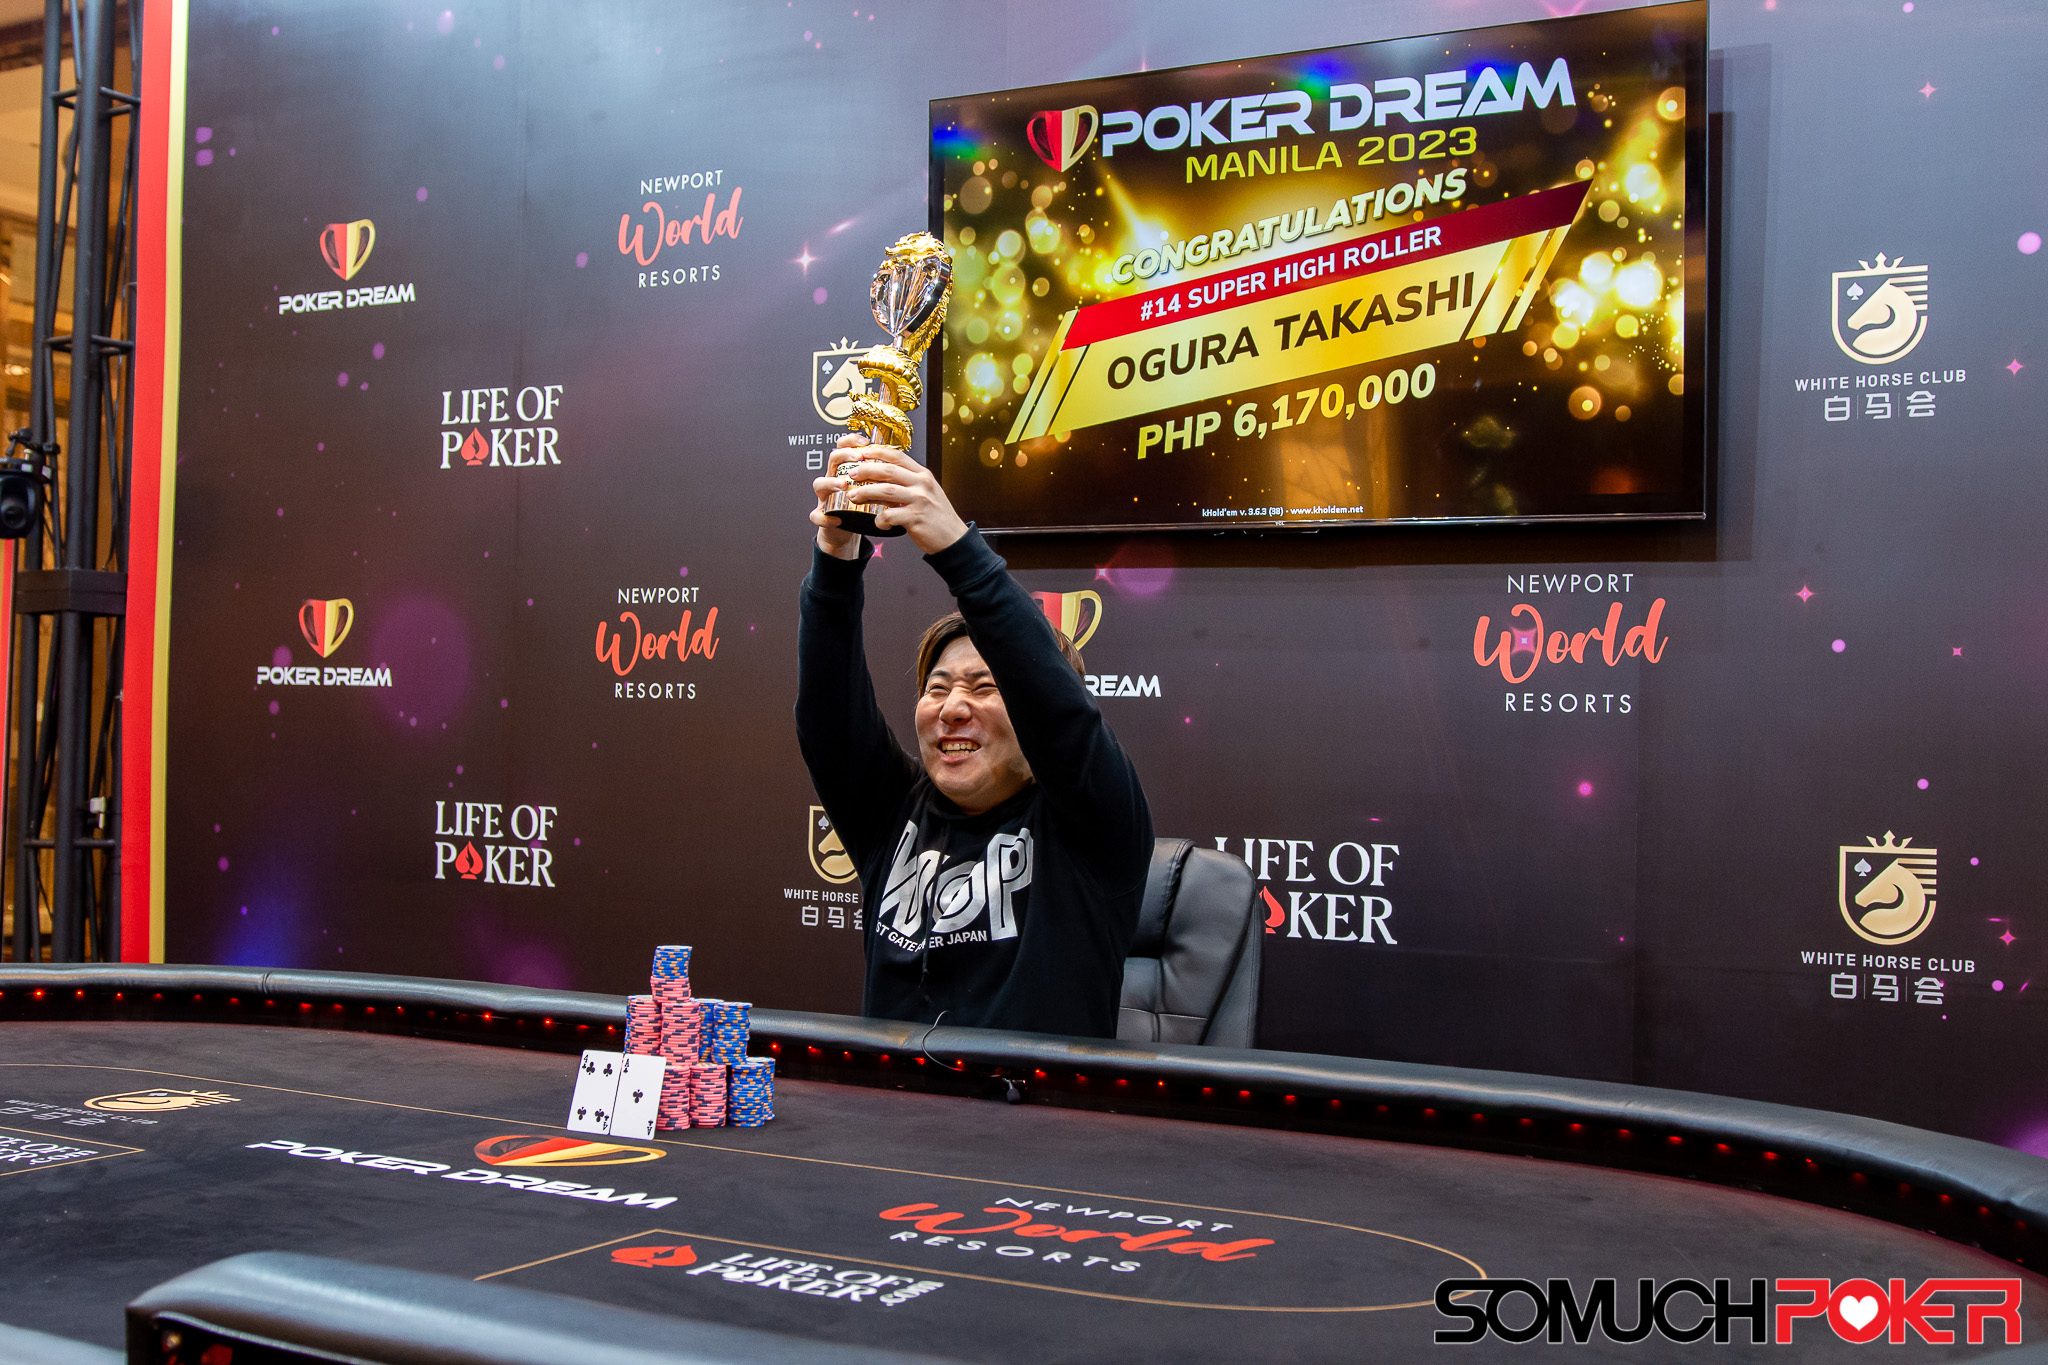 Poker Dream Manila: Ogura Takashi ships Super High Roller; Beh Kok Weng bags two events; How Chee Chong wins Bubble Rush